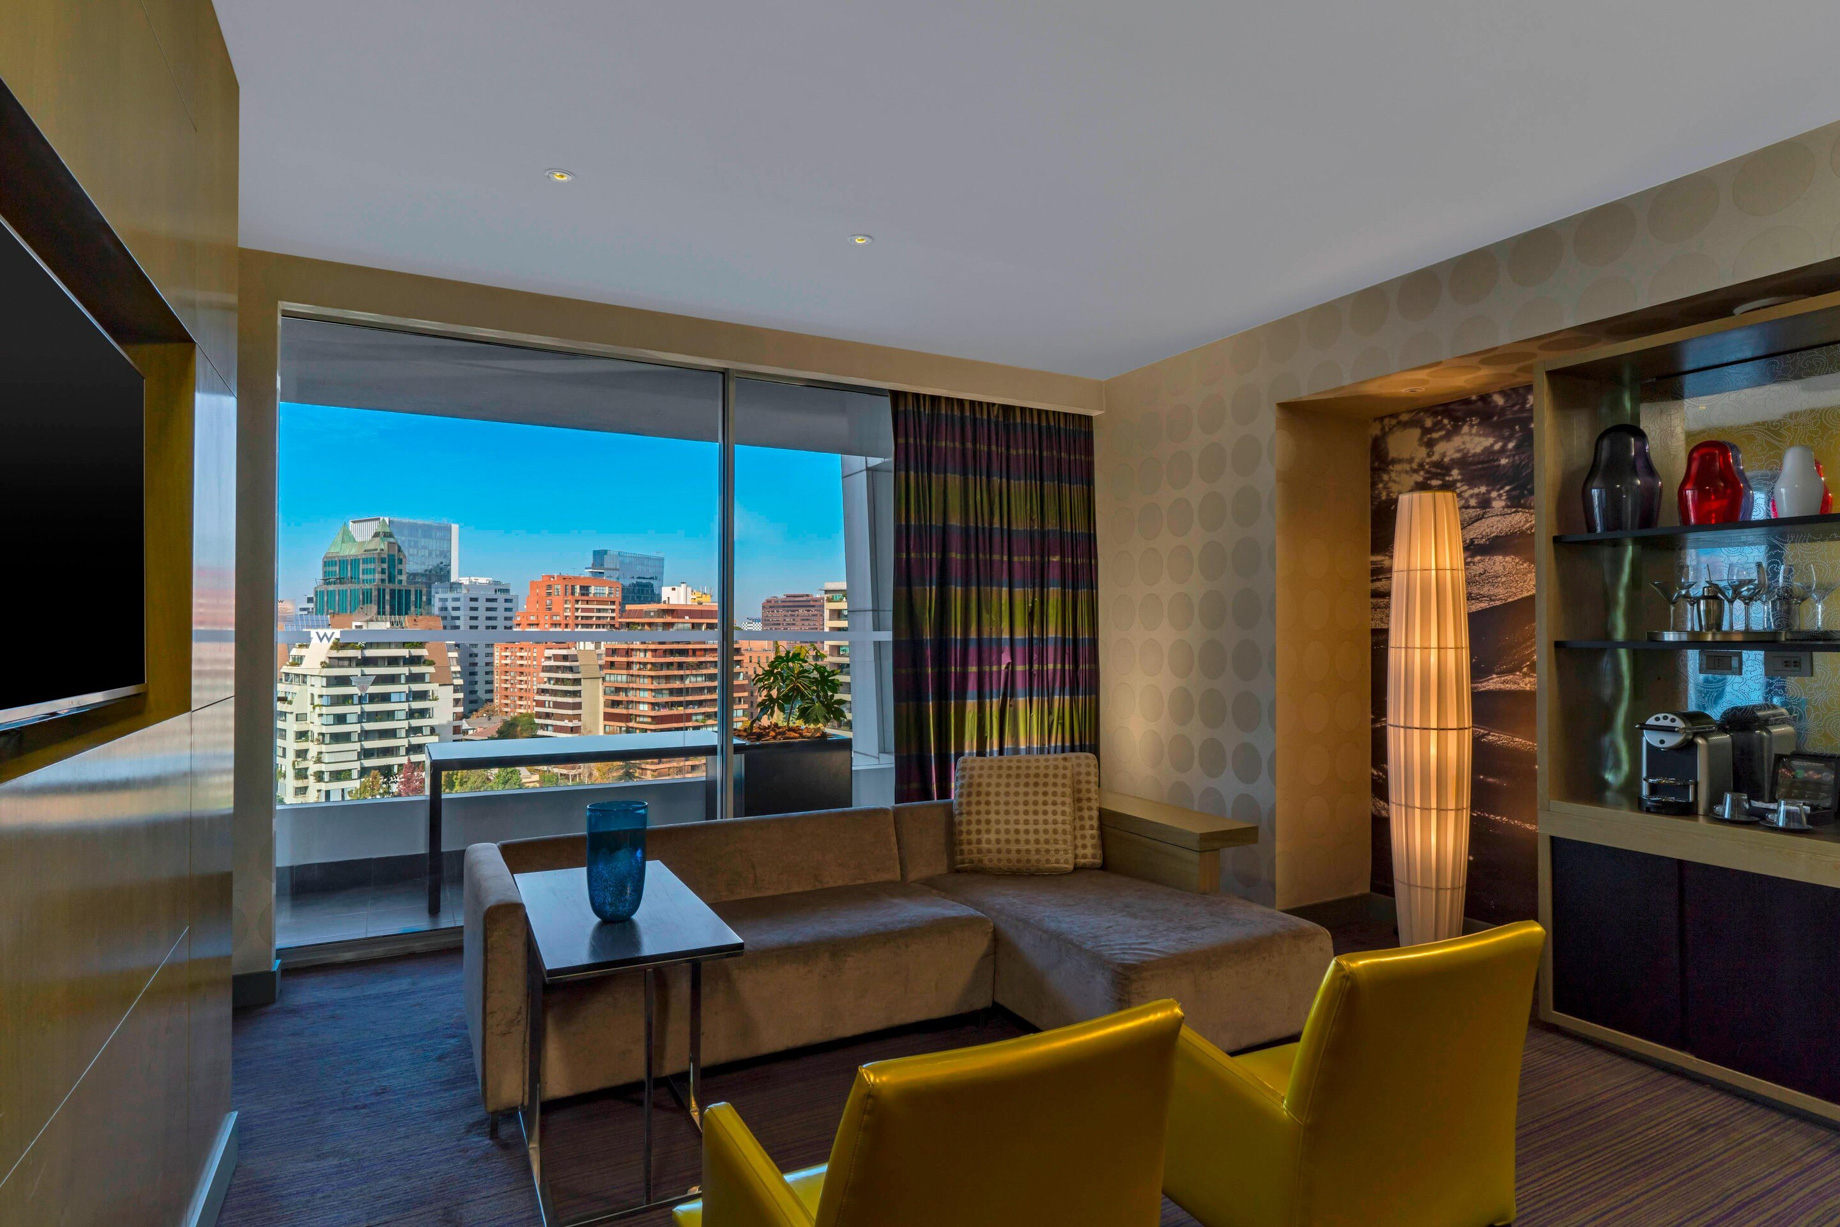 W Santiago Hotel - Santiago, Chile - Marvelous Suite Living Room View